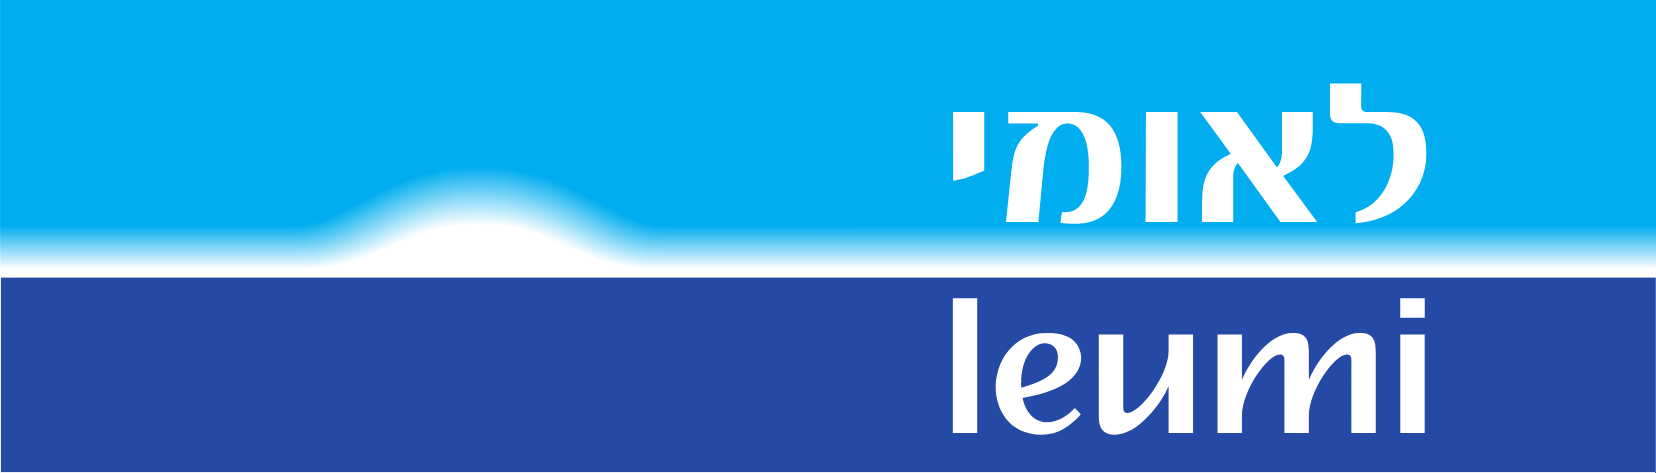 Bank Leumi
 logo large (transparent PNG)